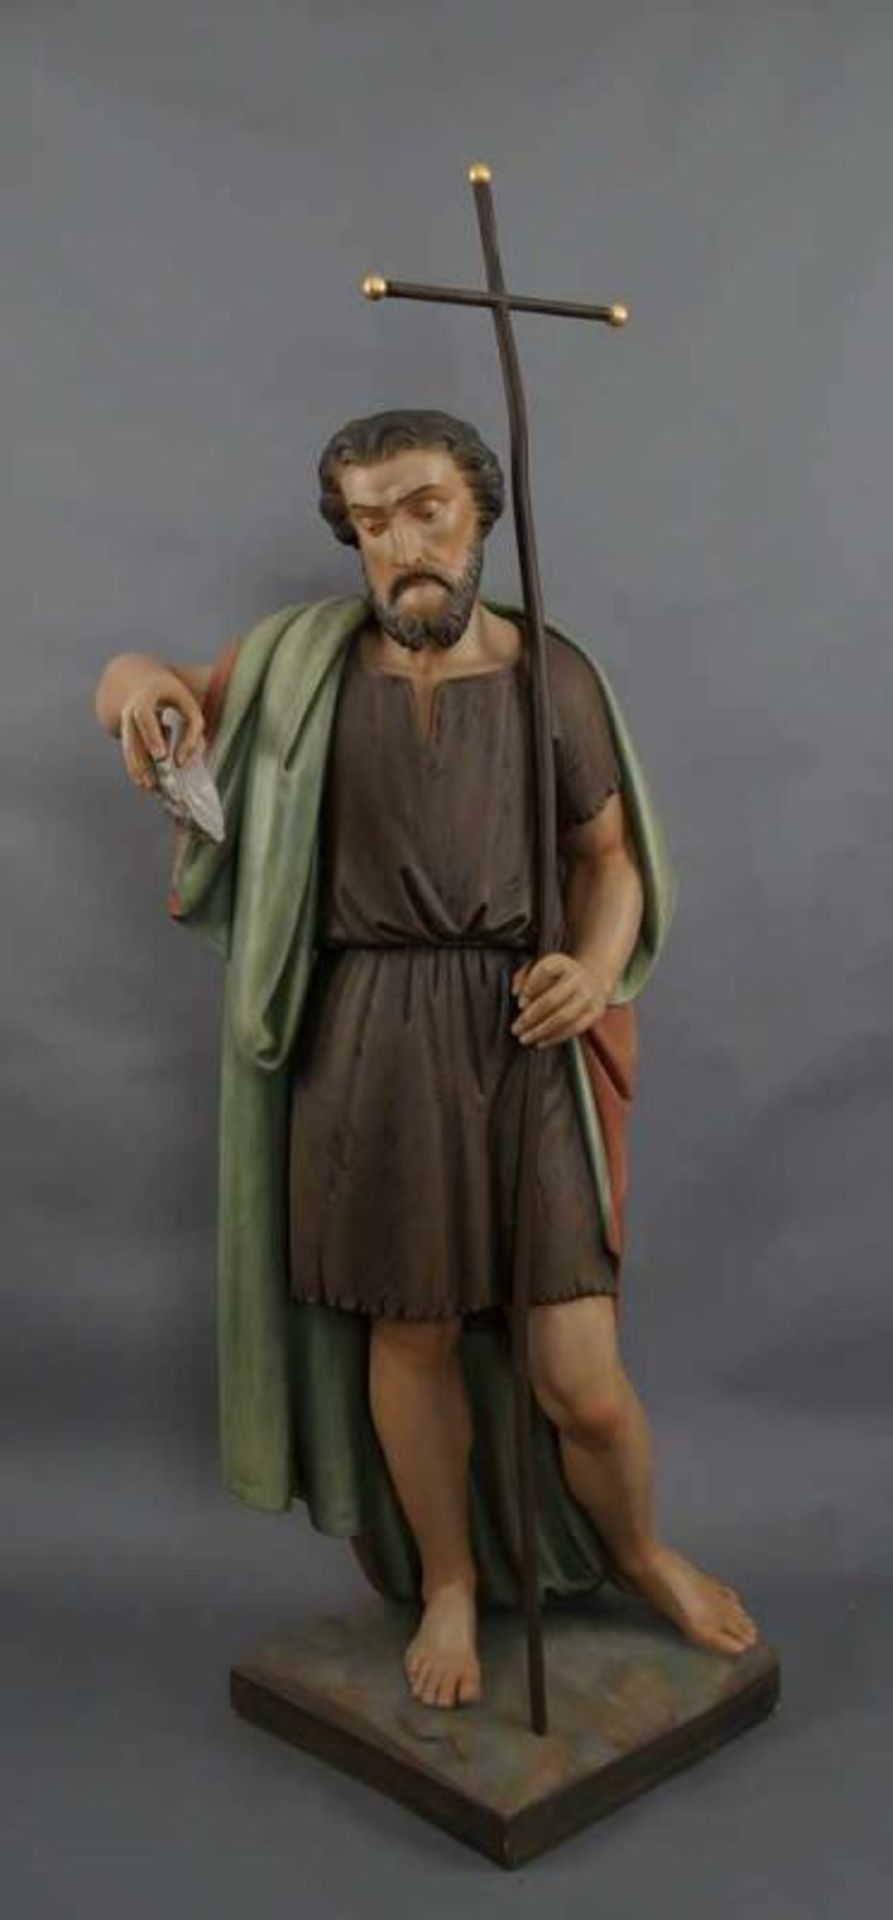 Nazarener Skulptur des heiligen Jakobus mit Pilgerstab und Jakobsmuschel in der Hand, Holz